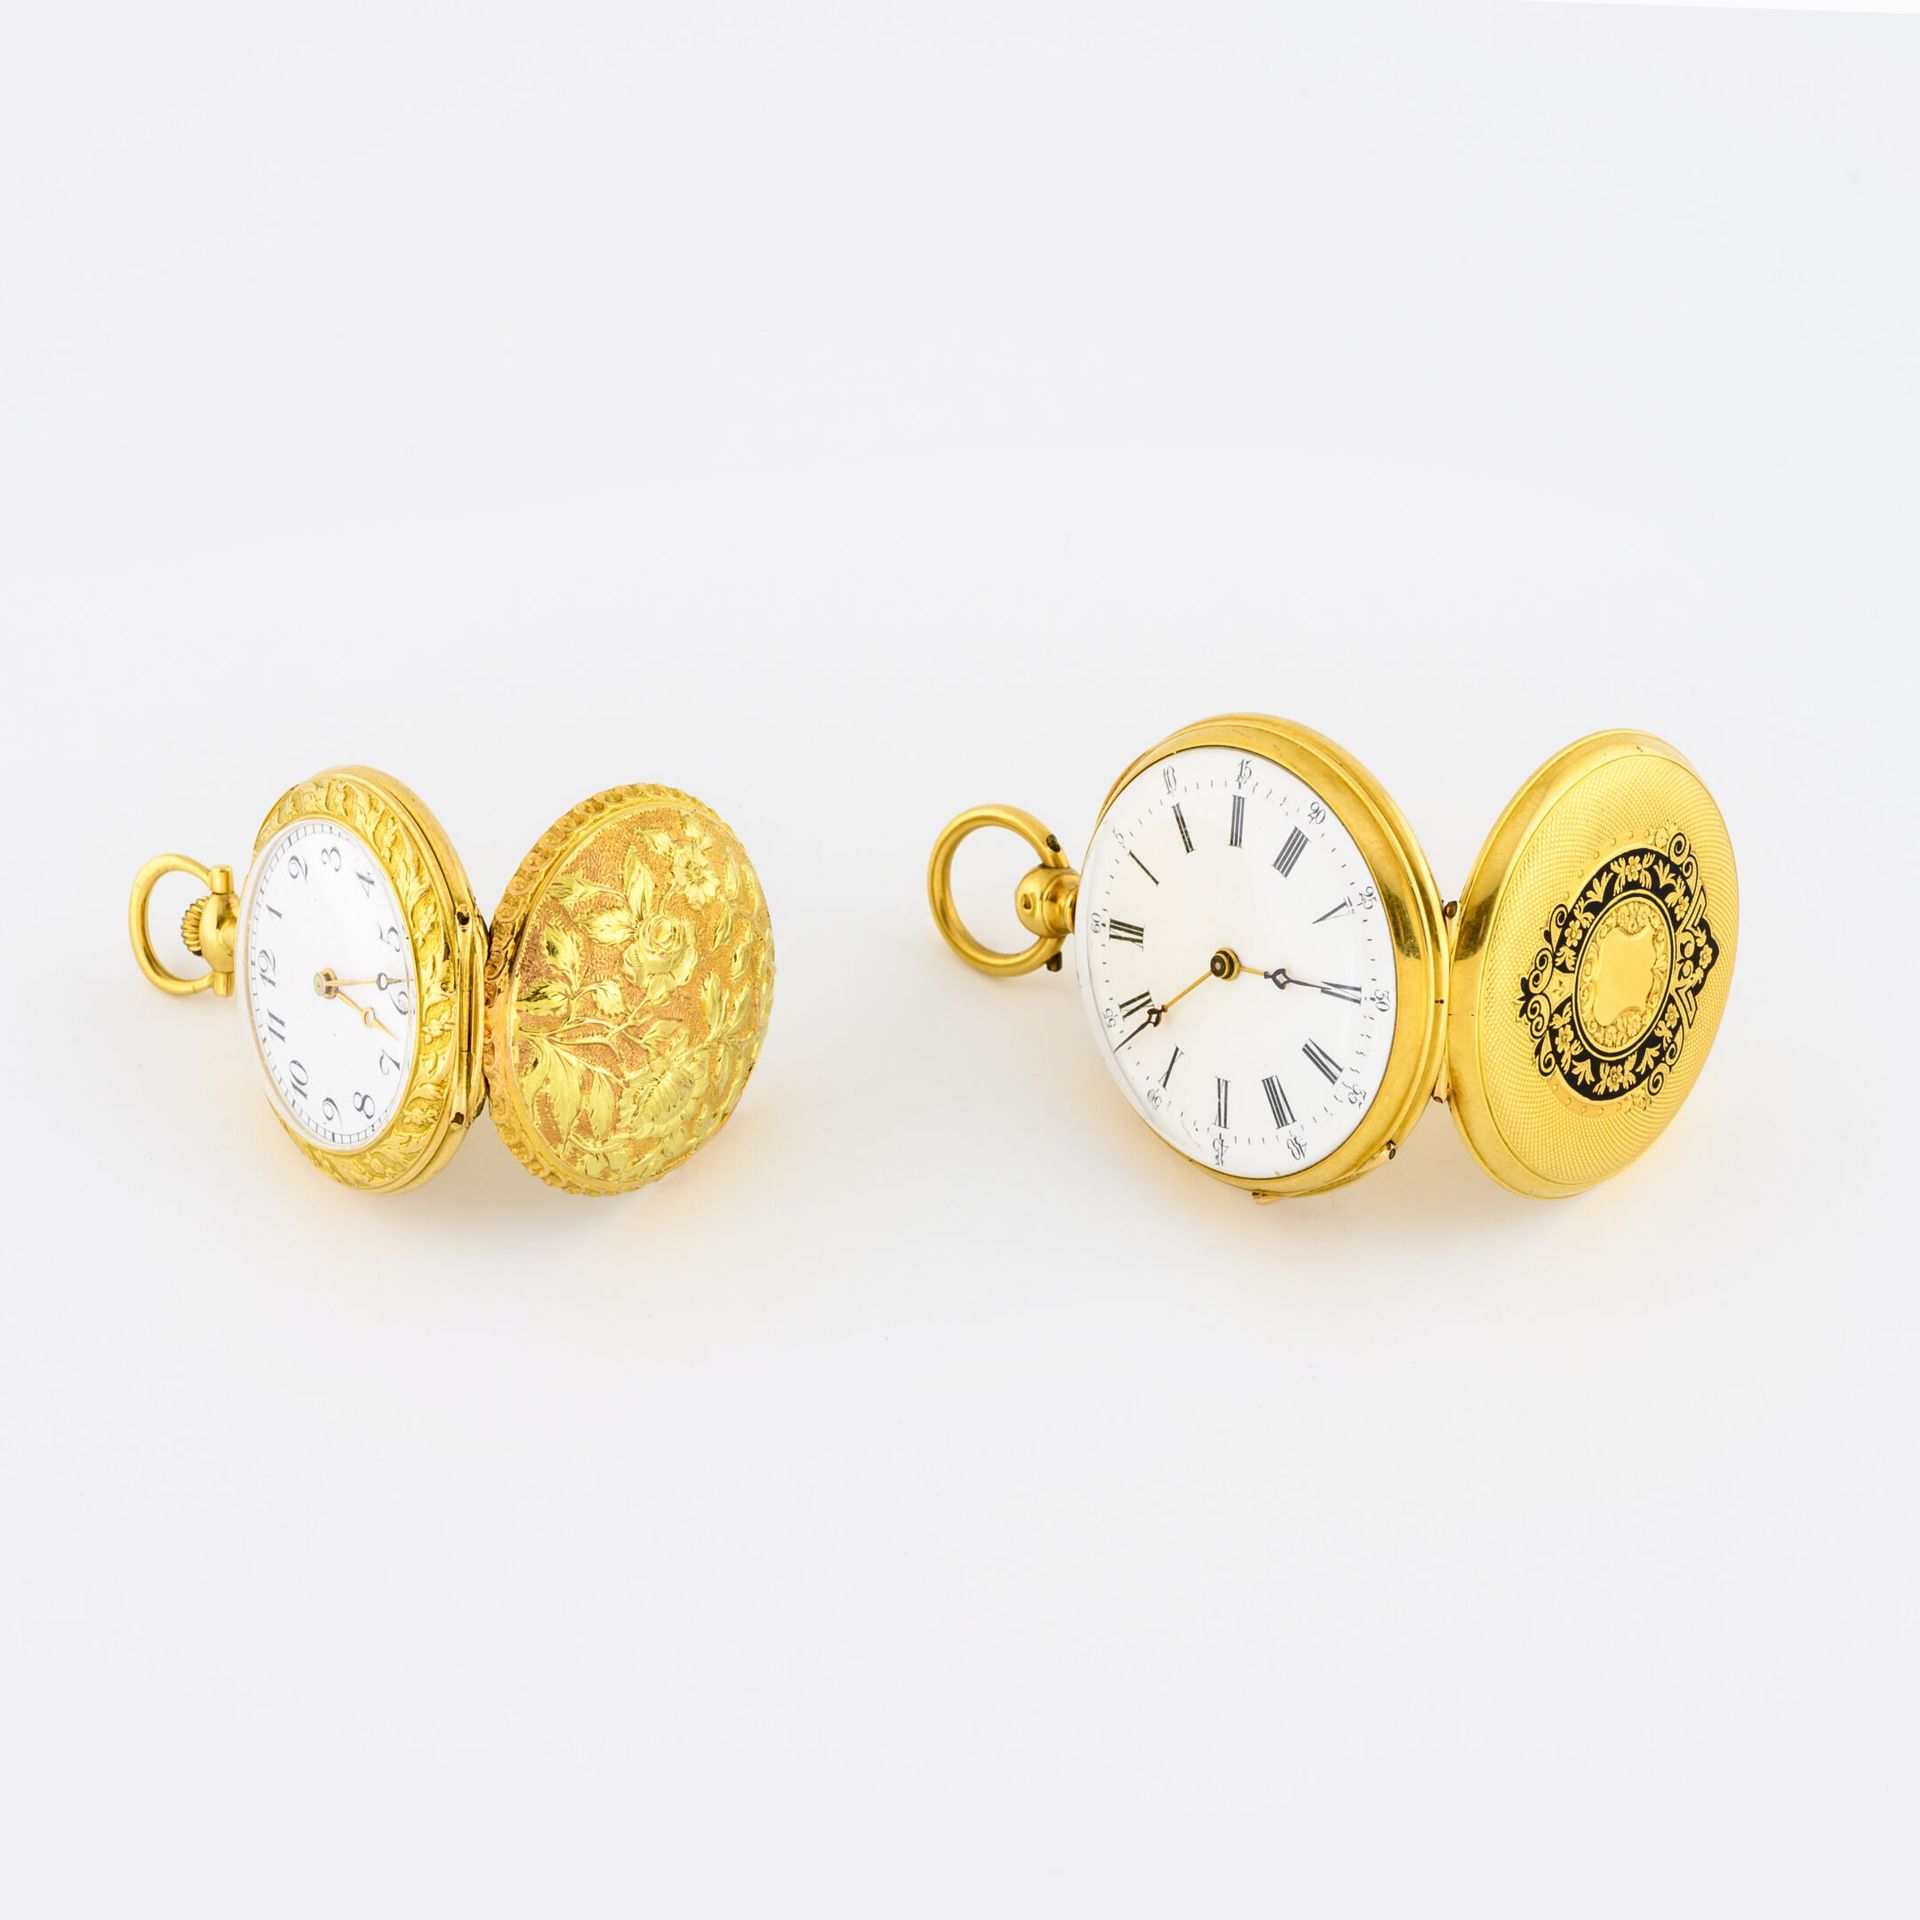 Lot en or jaune (750) comprenant : - Reloj de cuello

Contraportada con decoraci&hellip;